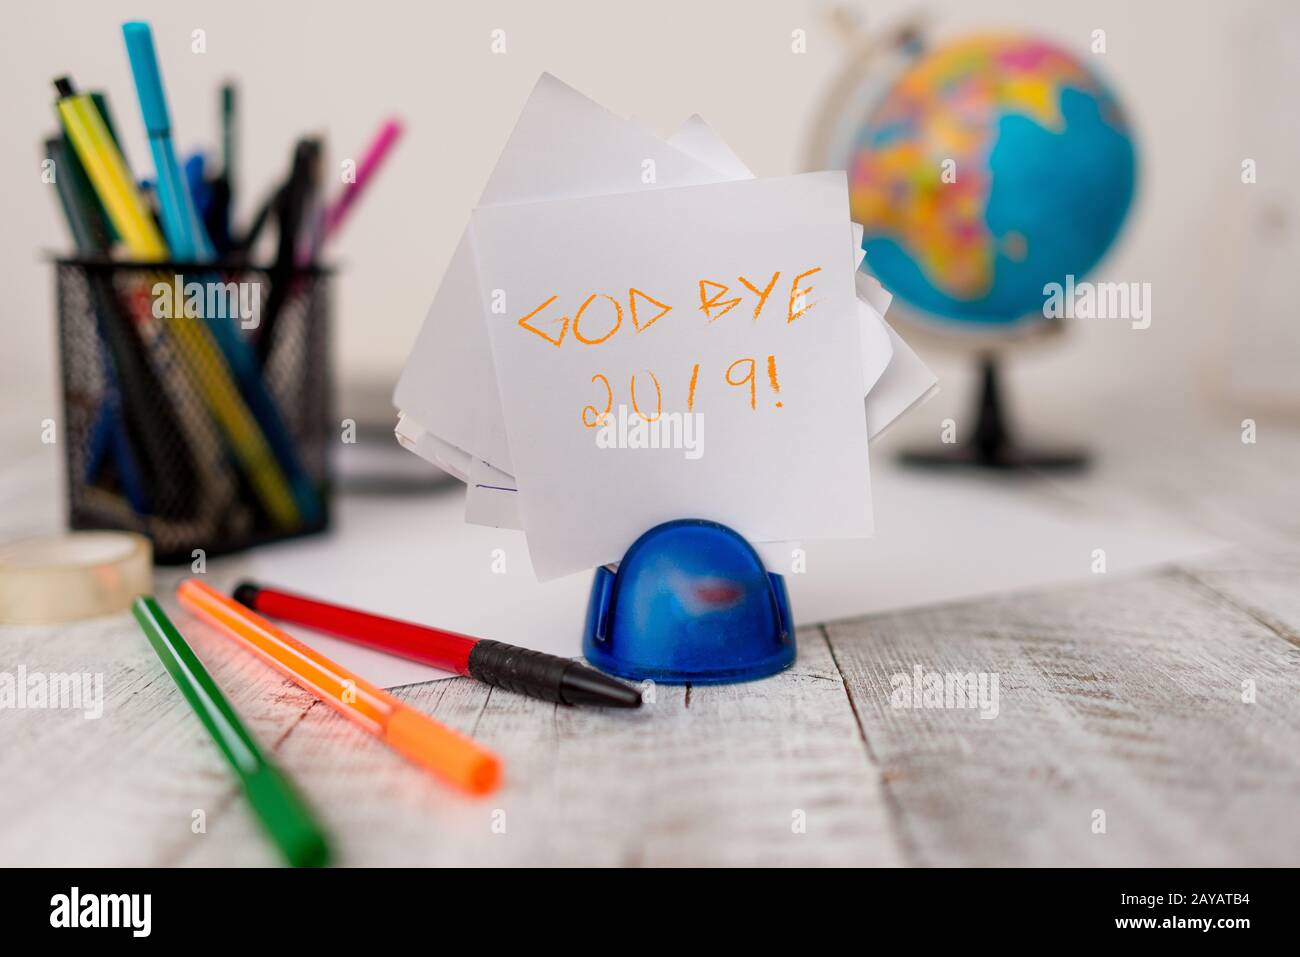 Textzeichen, das Gott Bye 2019 zeigt. Konzeptfoto bringt gute Wünsche zum Ausdruck, wenn man sich abspendet oder Ende letzten Jahres stationär plus Stift Stockfoto